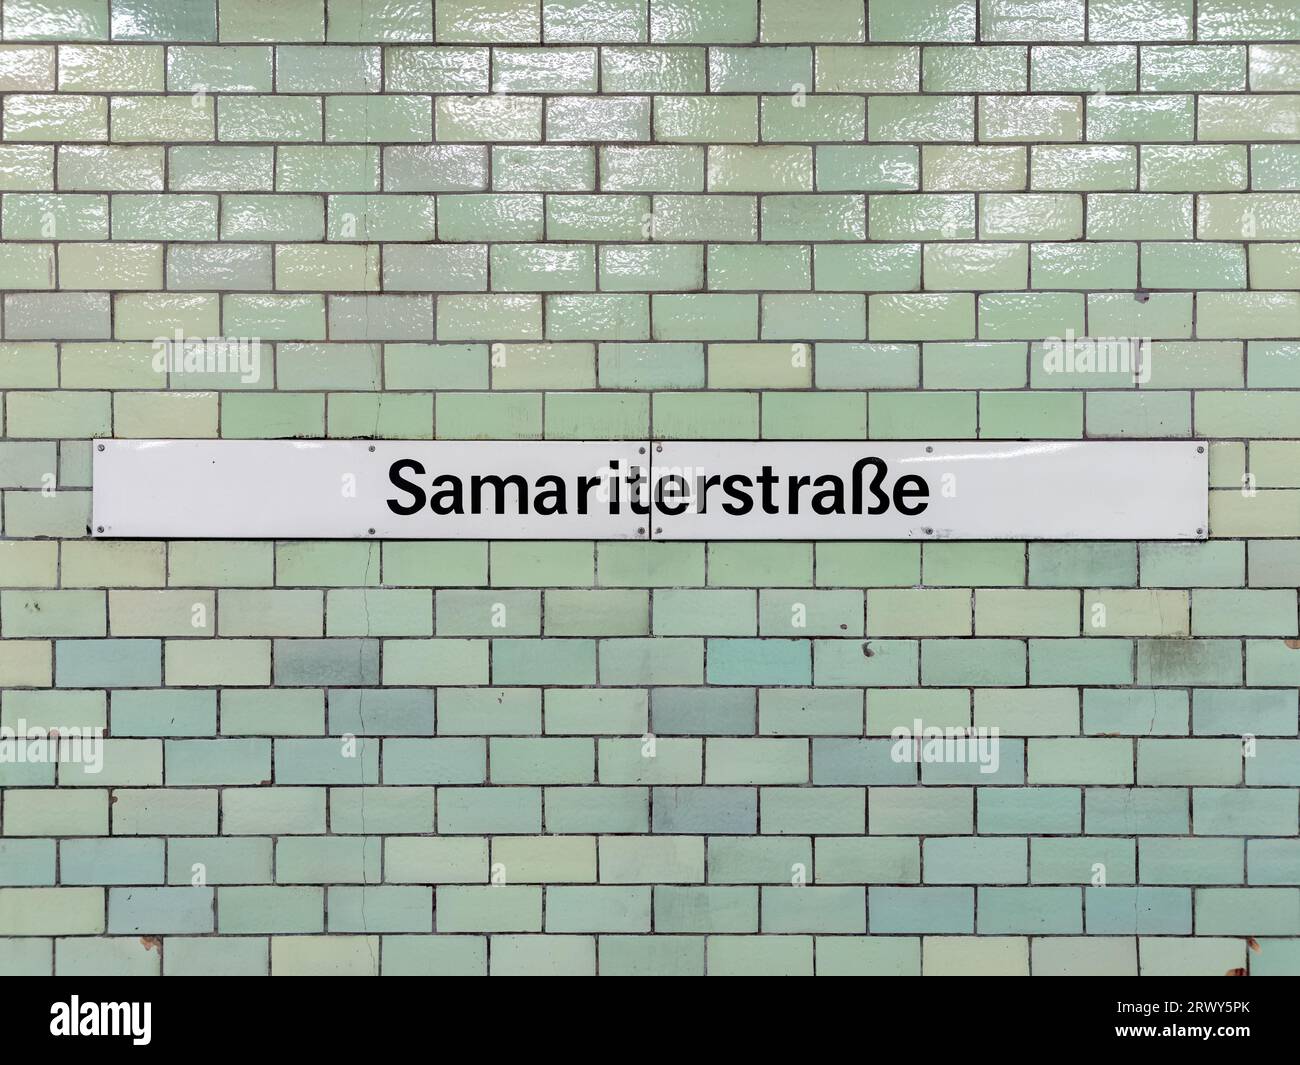 Namensschild des Bahnhofs Samariterstraße der Linie U5 in Berlin. Der Straßenname ist an einer gekachelten Wand in der U-Bahn montiert - öffentliche Verkehrsmittel. Stockfoto